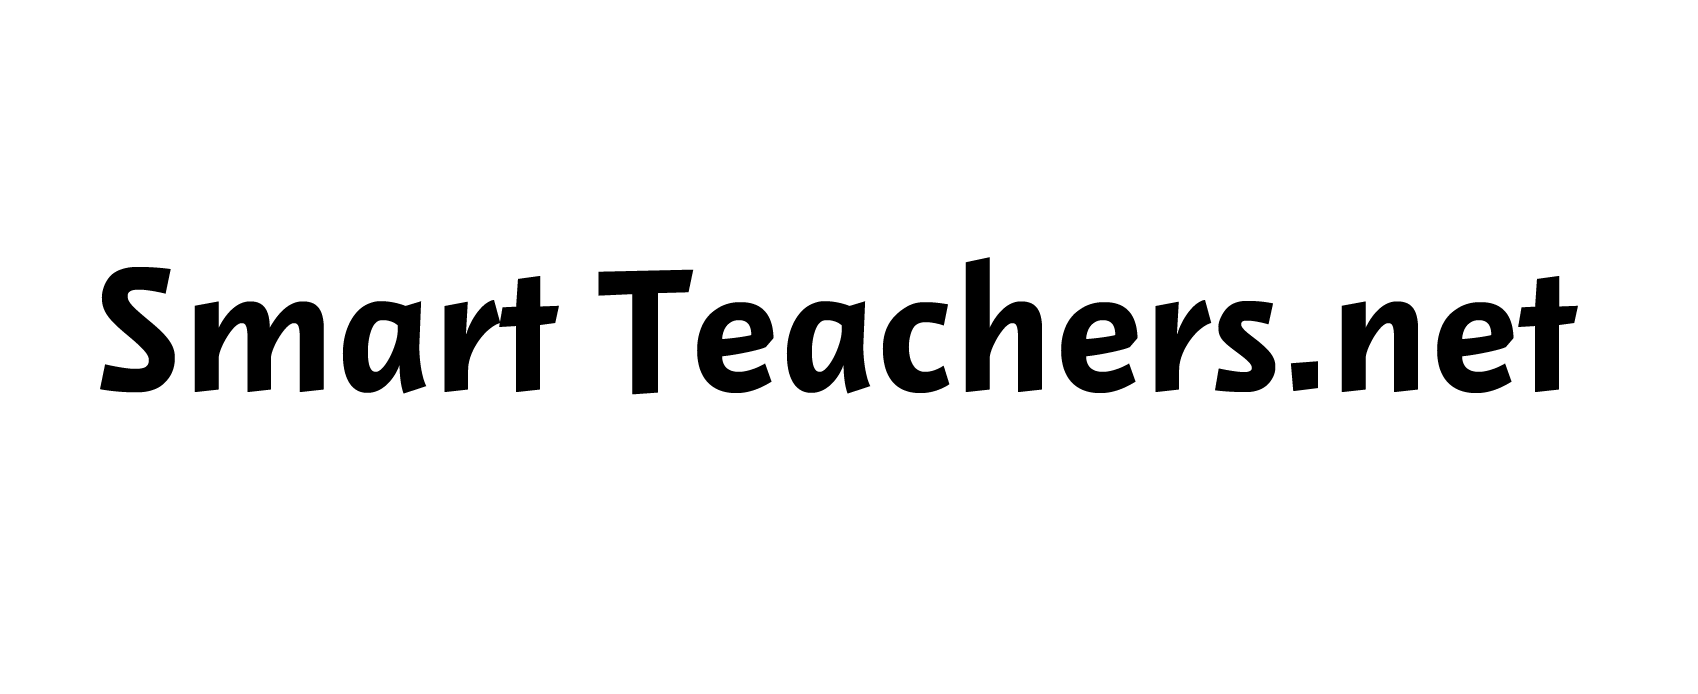 Smart Teachers.net